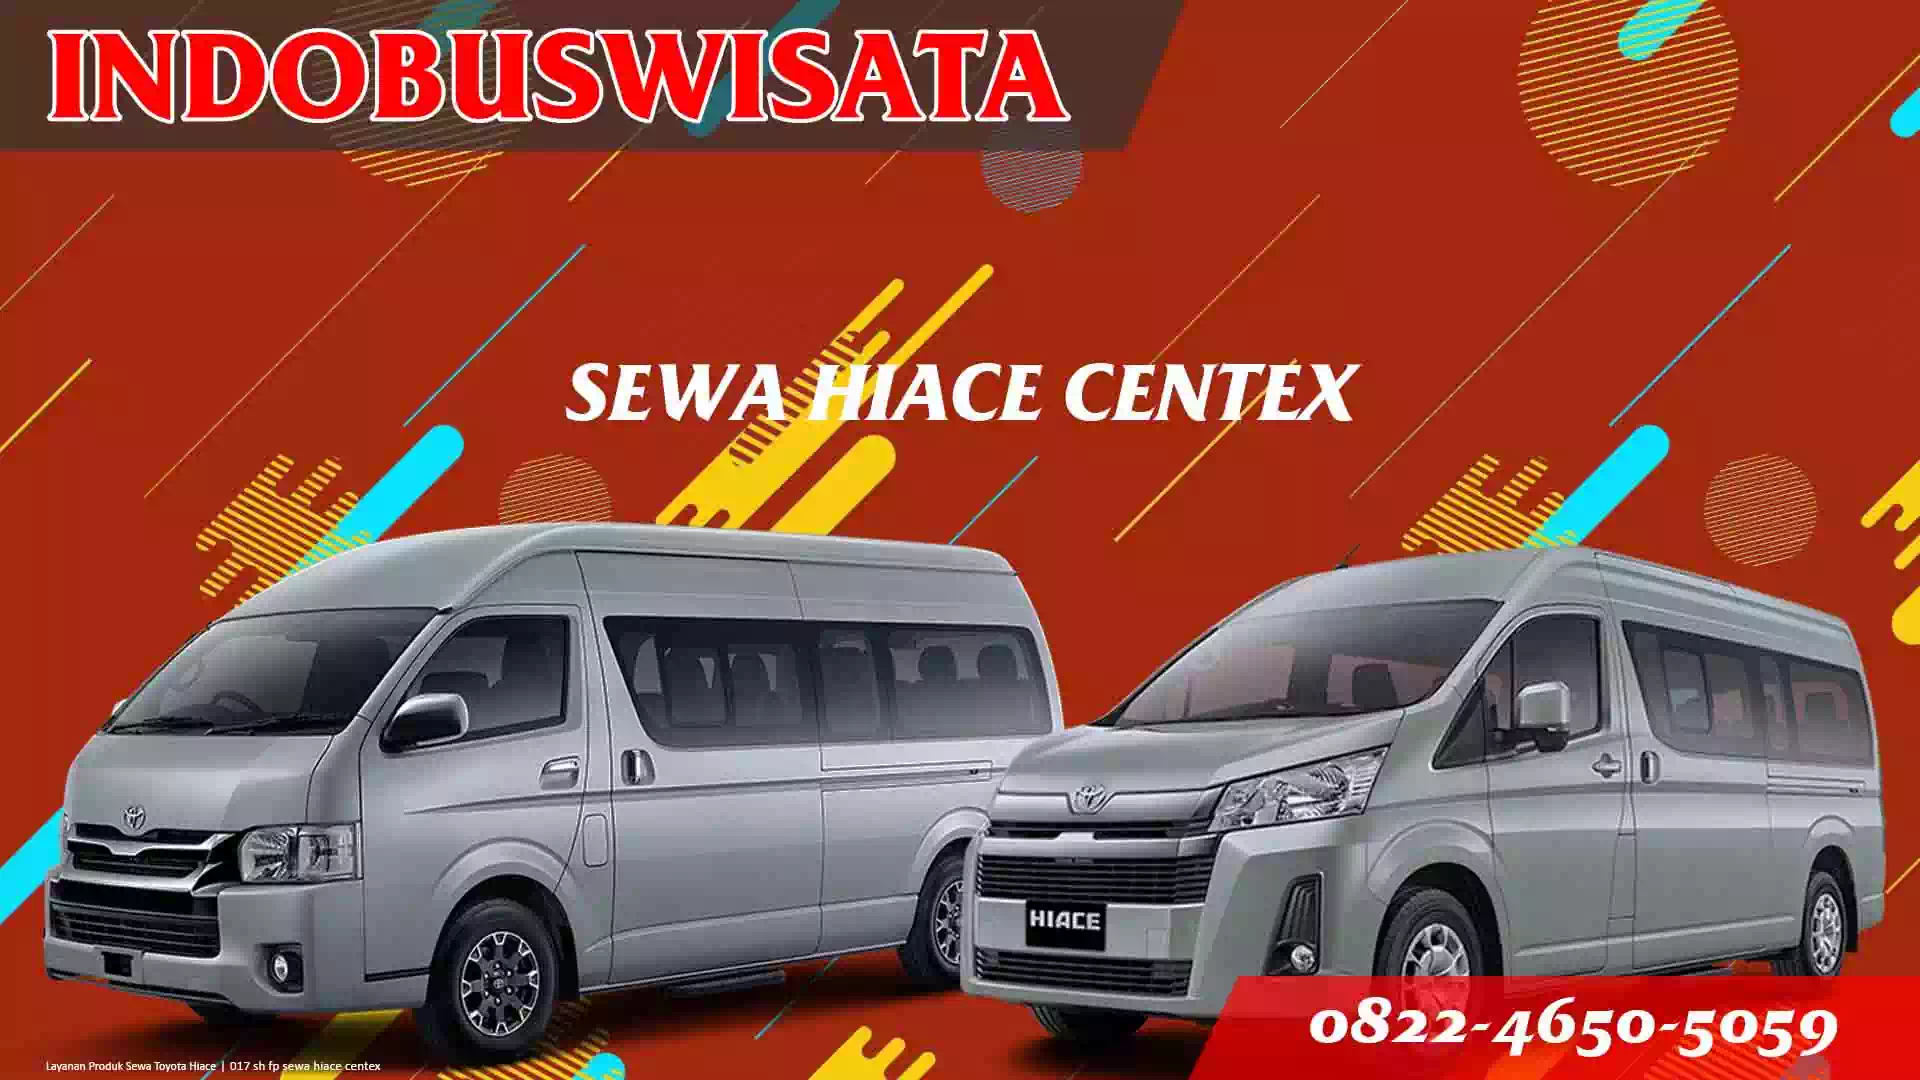 017 Sh Fp Sewa Hiace Centex Indobuswisata